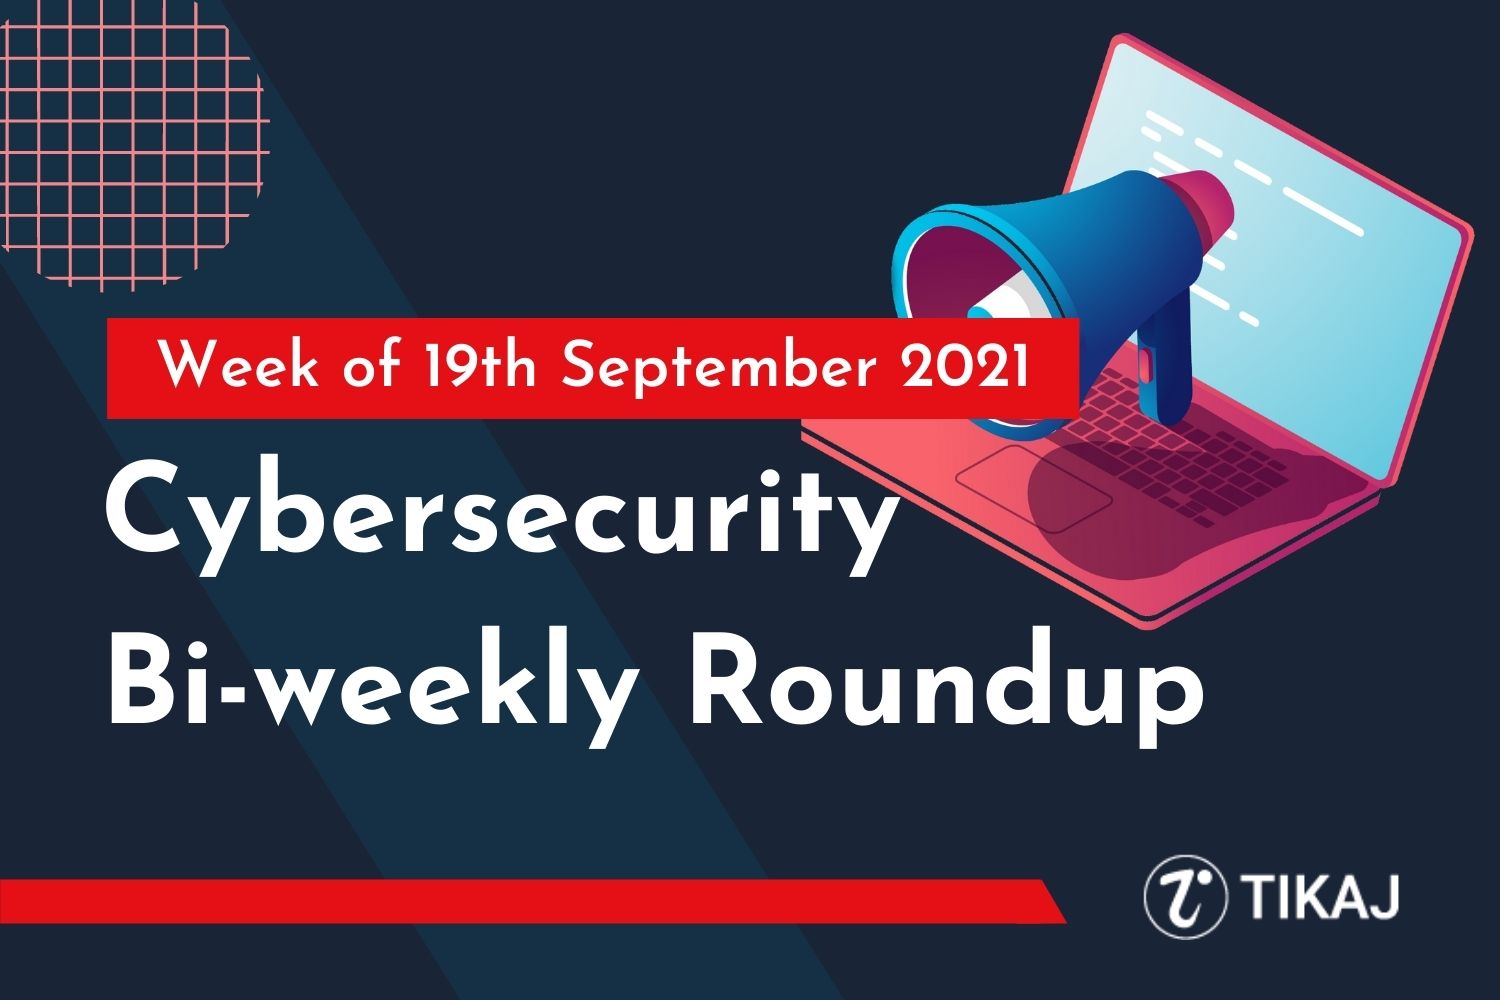 Cybersecurity Bi-weekly Roundup: Week of 19th September